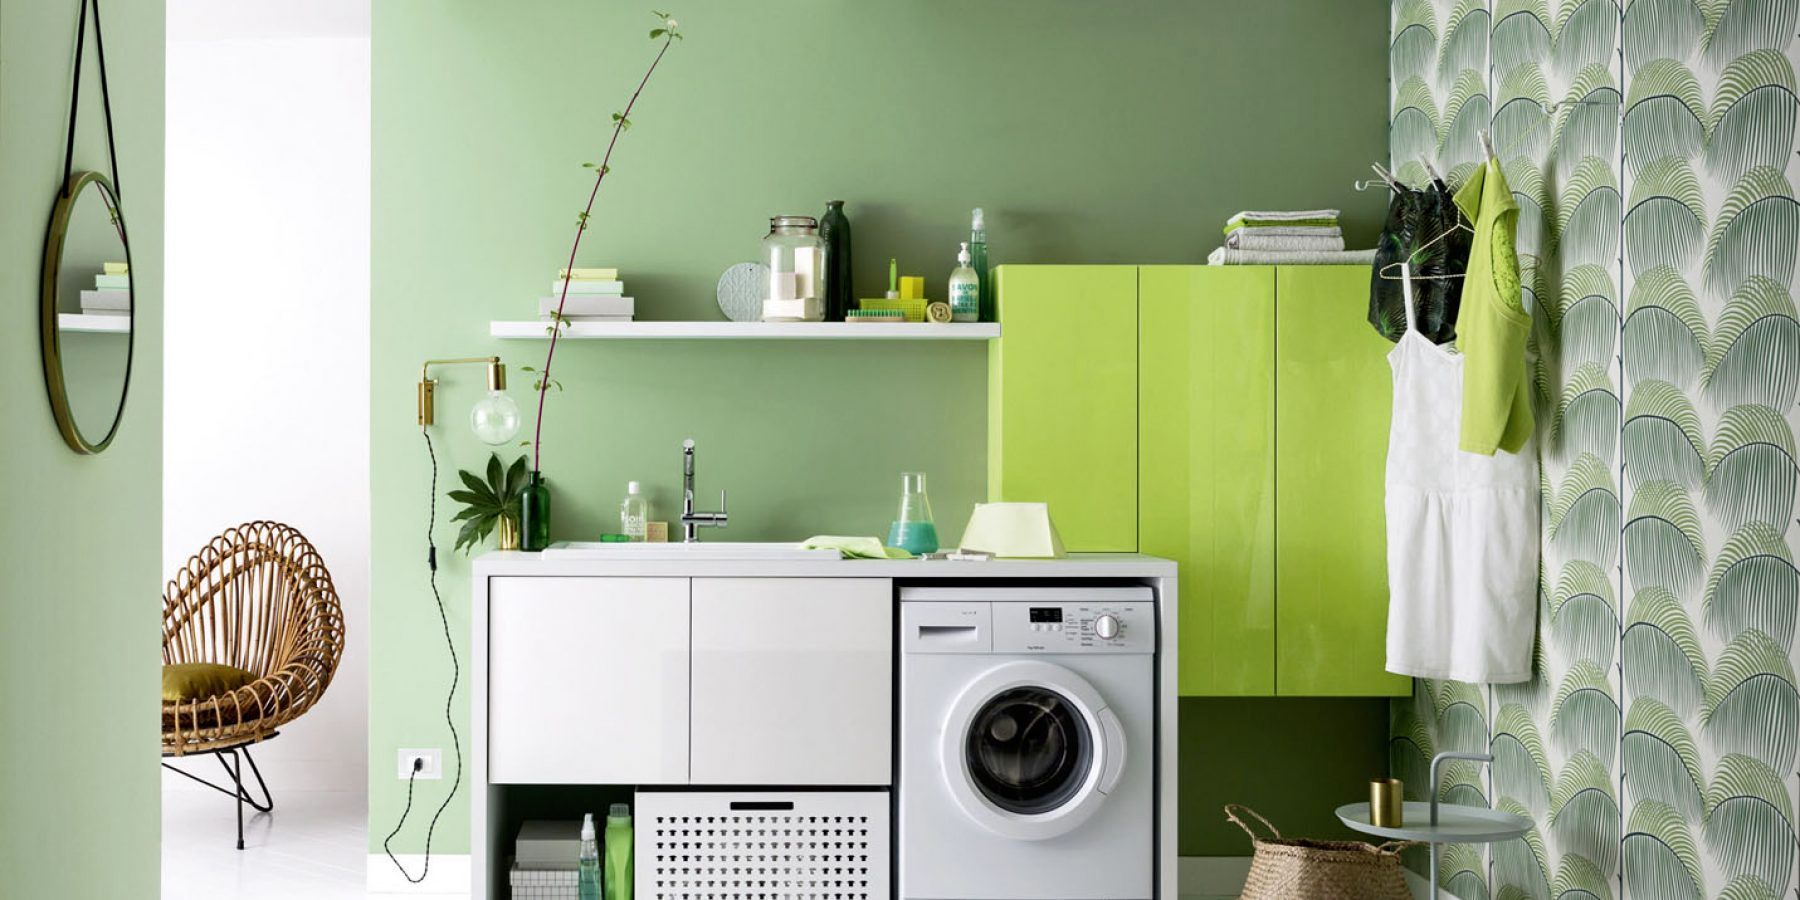 Zona lavanderia: come organizzarlo al meglio